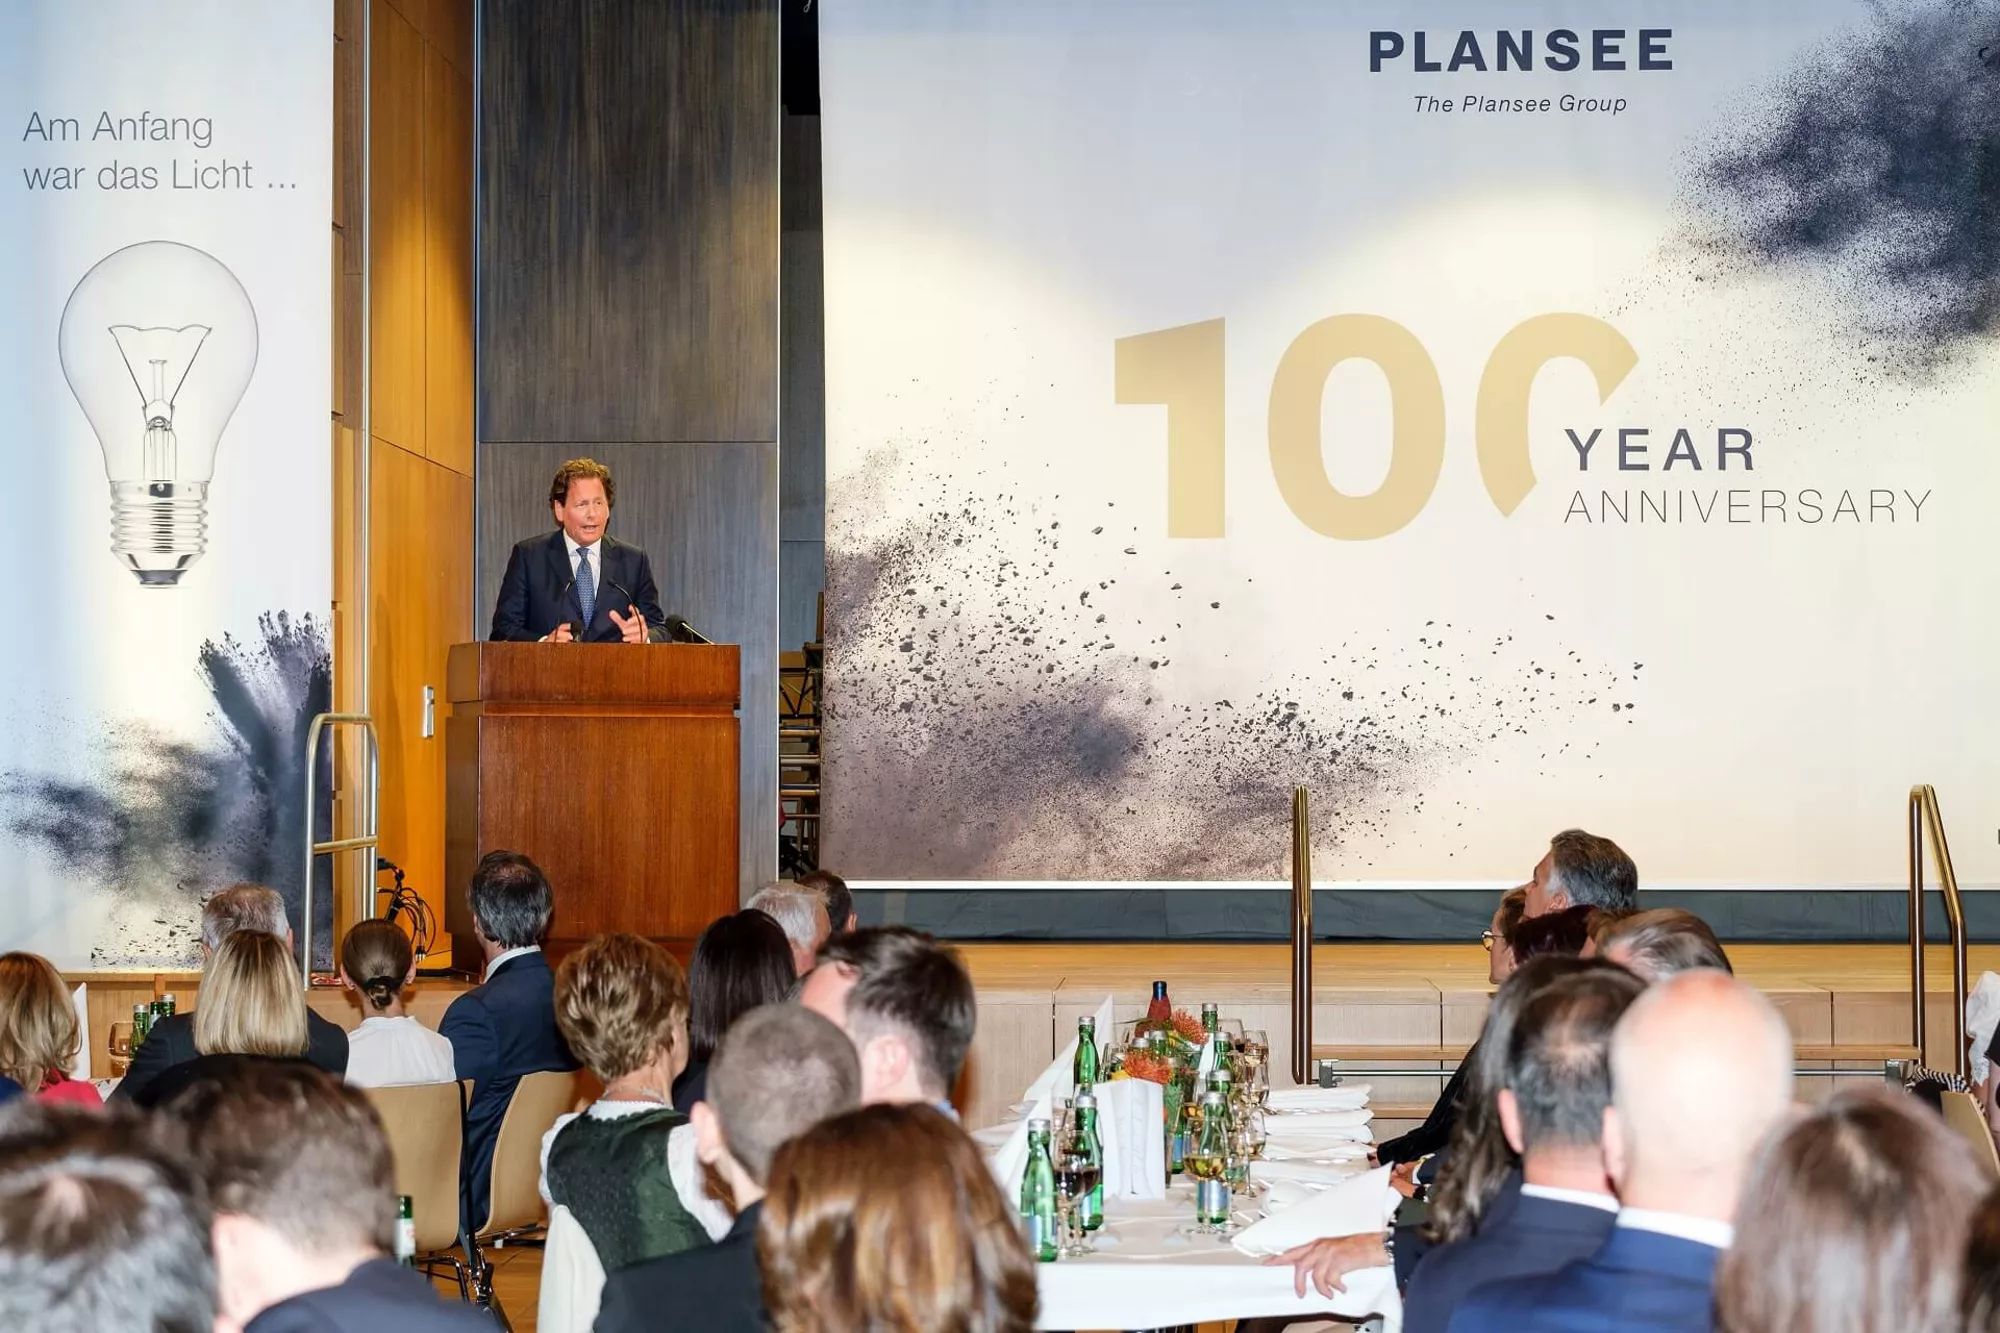 Plansee celebra sus 100 años de existencia. Evento en el hall en Reutte.